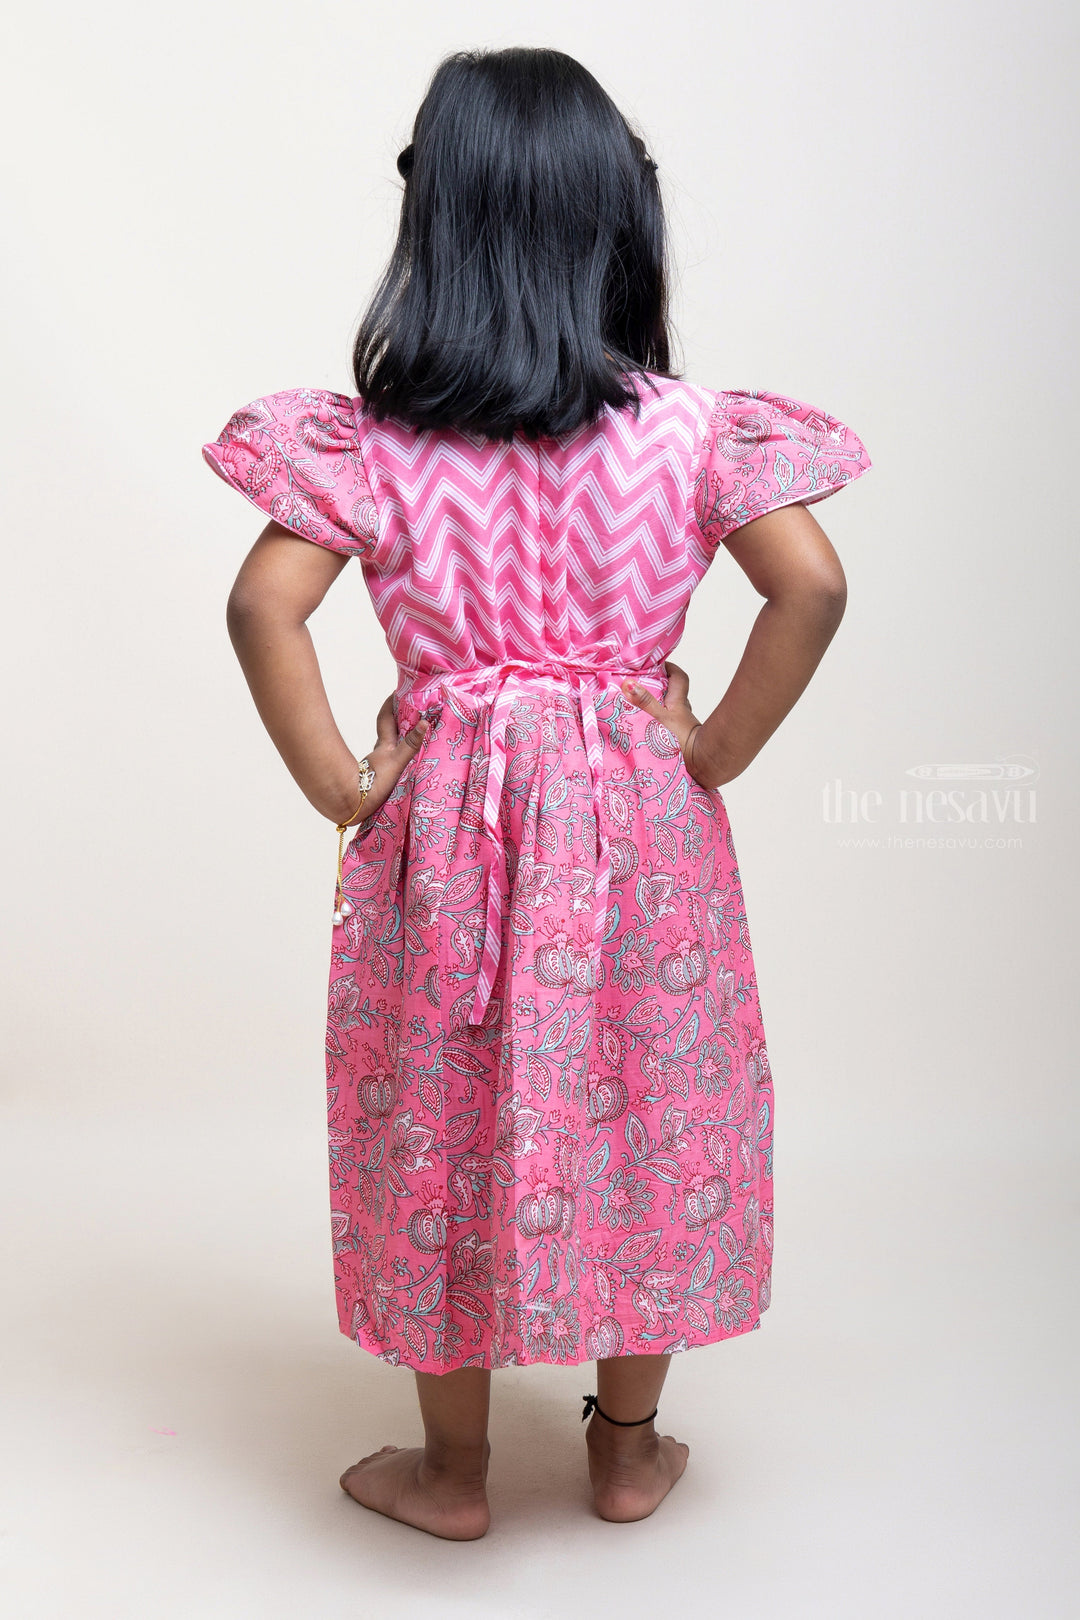 The Nesavu Girls Cotton Frock Latest Design Pink Cotton Frock For Girls With Cap Sleeves psr silks Nesavu